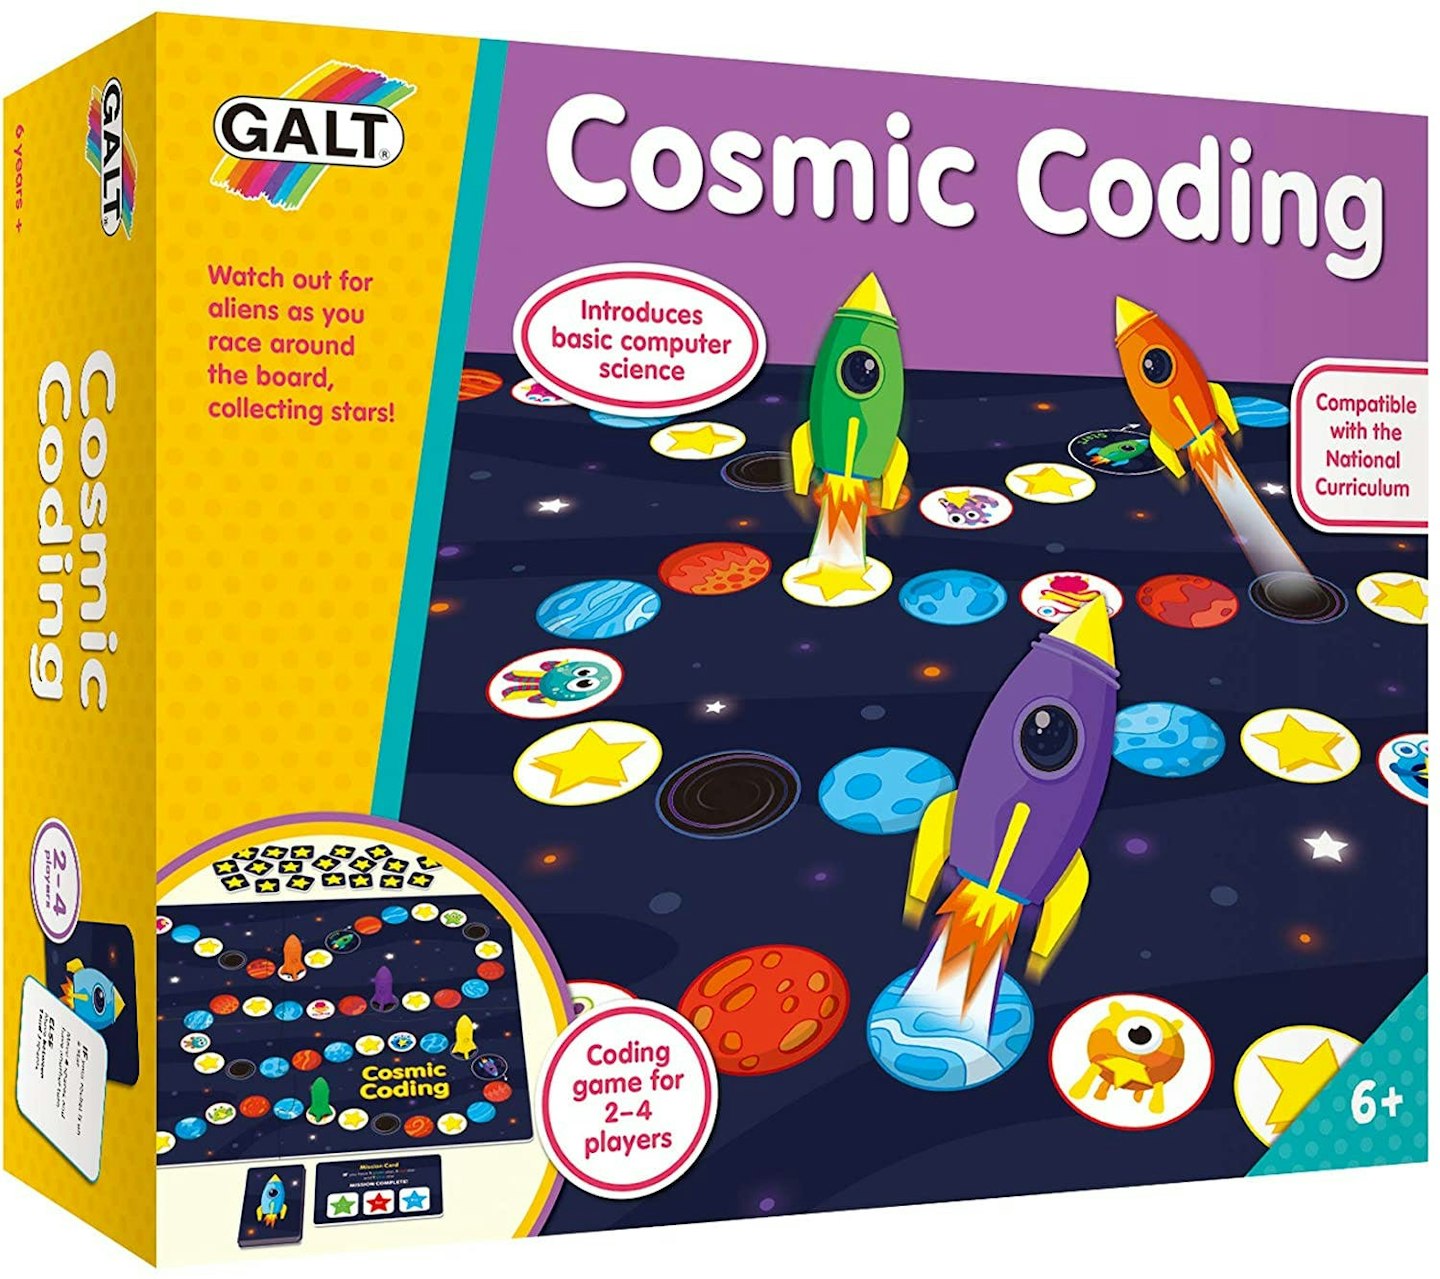 https://images.bauerhosting.com/affiliates/sites/12/2022/10/Galt-Toys-Cosmic-Coding-Game.jpg?auto=format&w=1440&q=80